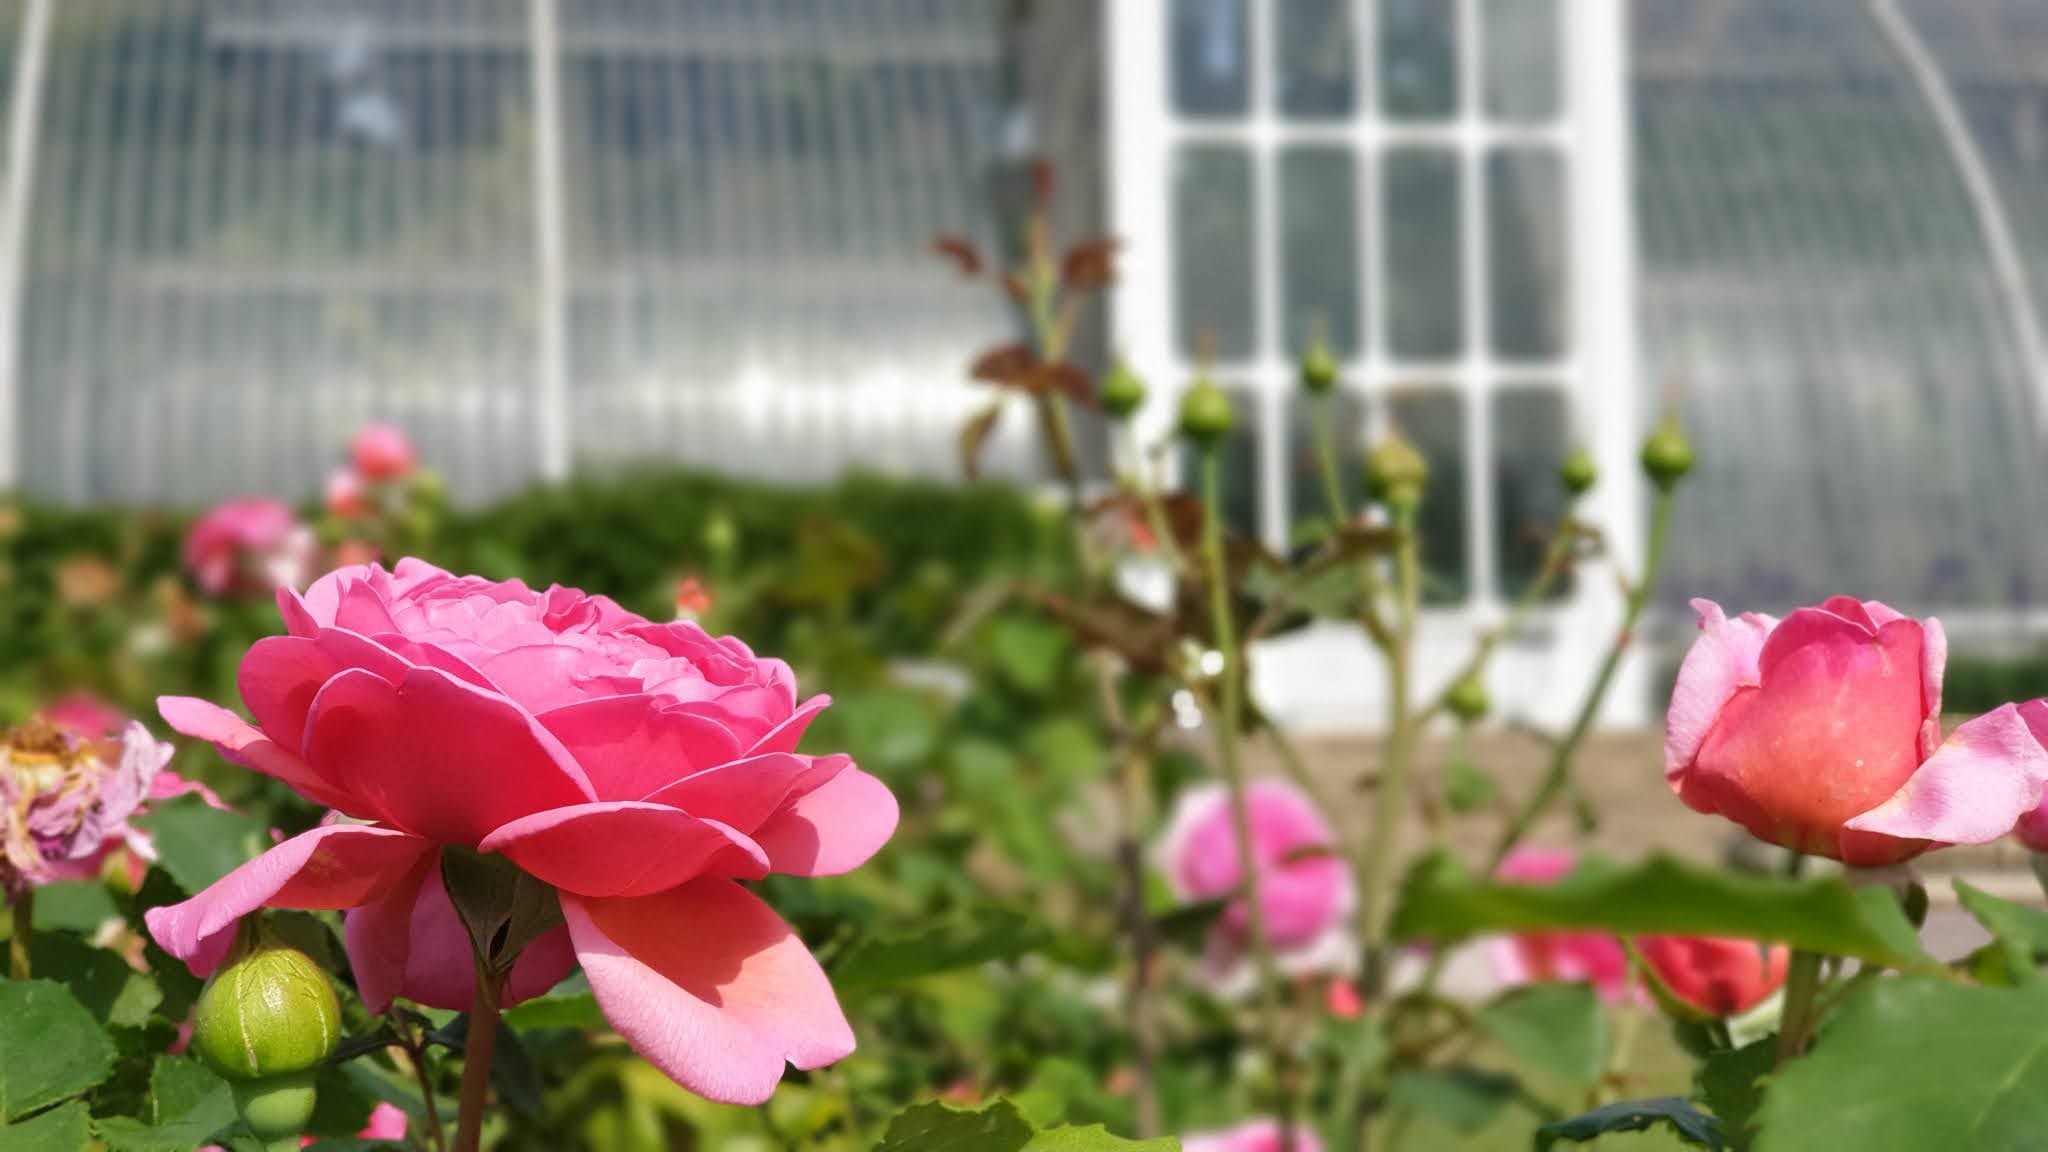 rose garden at kew gardes